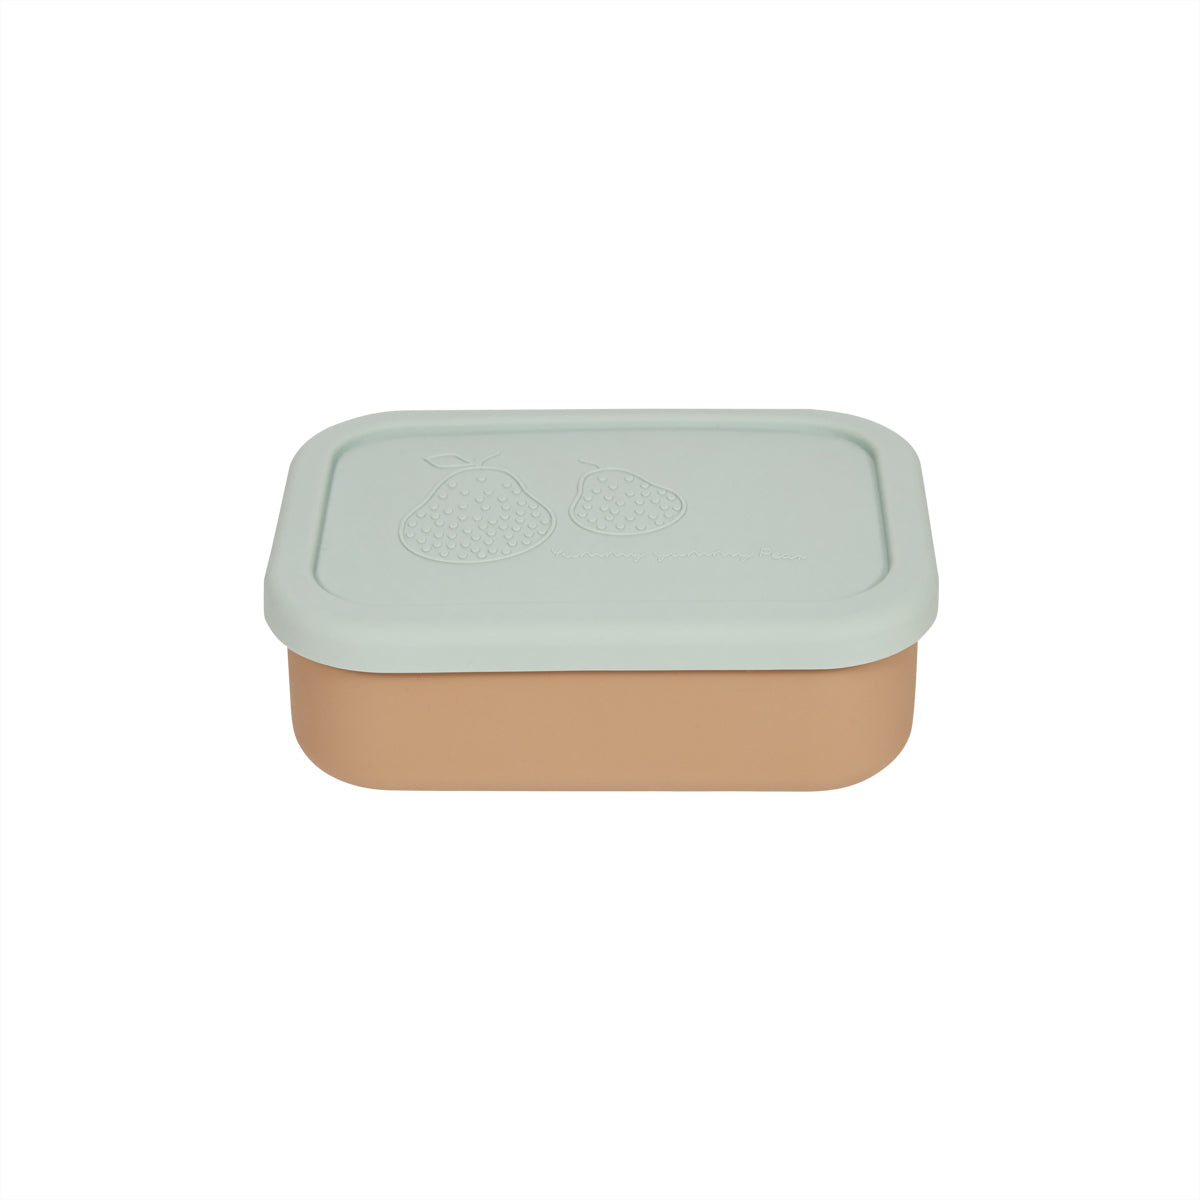 OYOY MINI Yummy Lunch Box - Small Lunch Box 701 Green / Camel